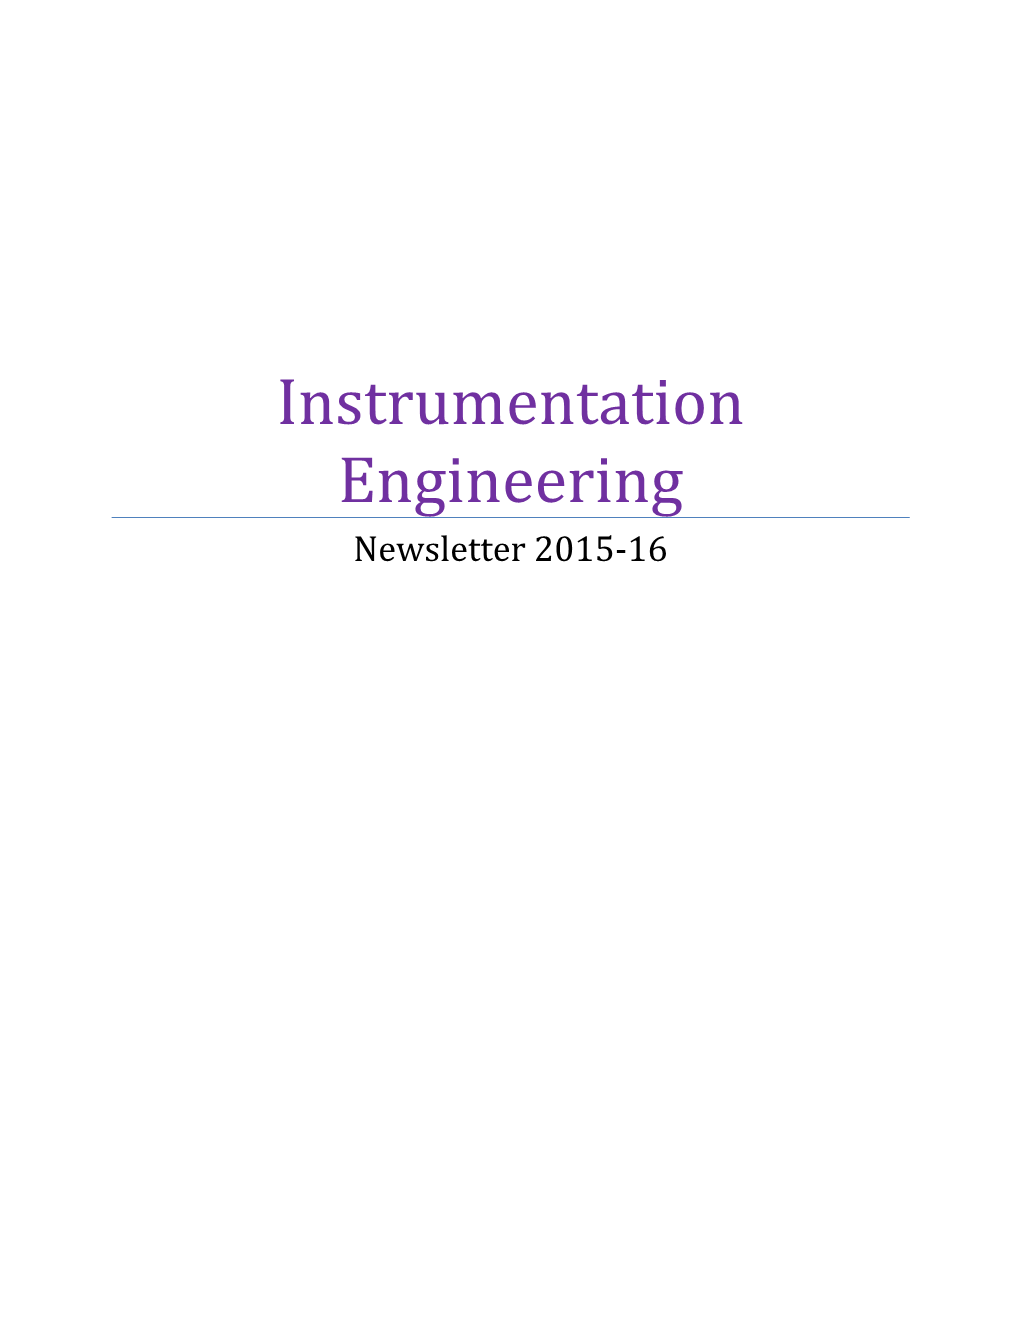 Instrumentation Engineering Newsletter 2015-16